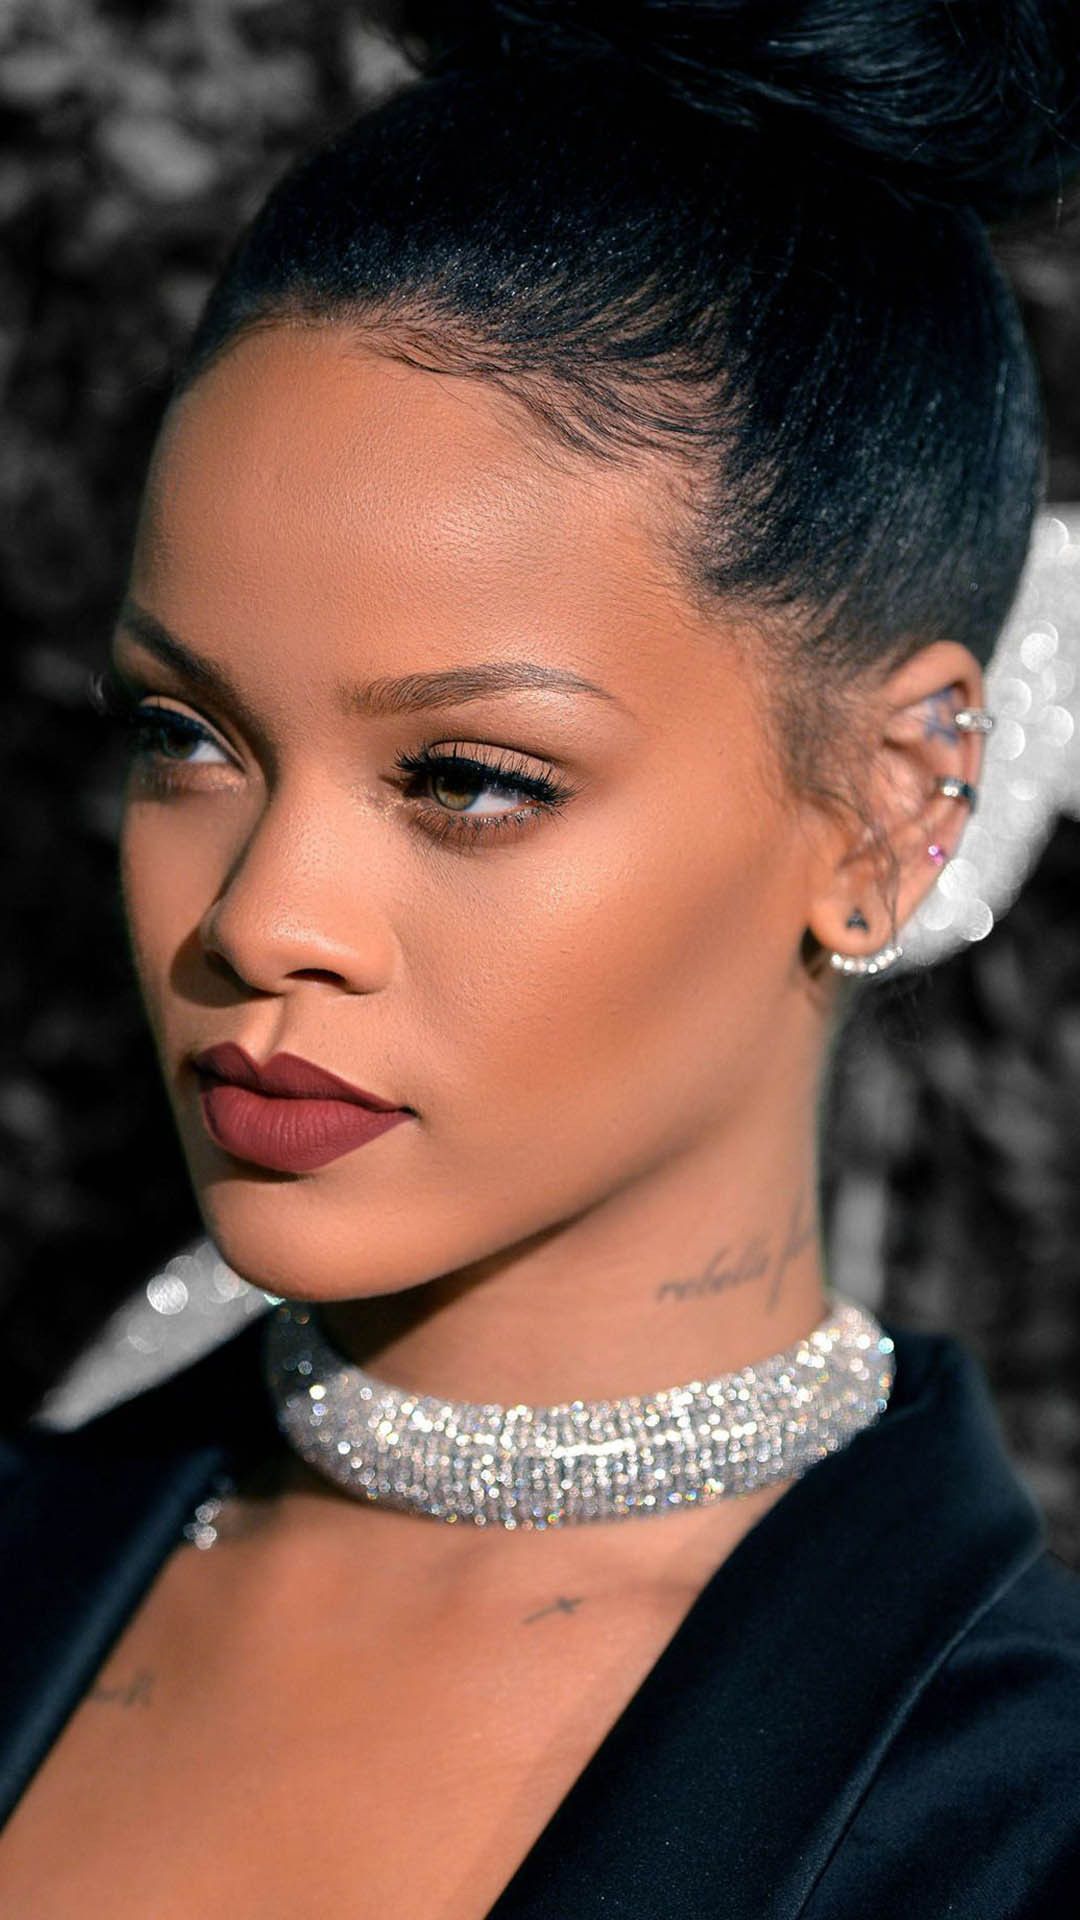 100 Free Rihanna HD Wallpapers & Backgrounds - MrWallpaper.com